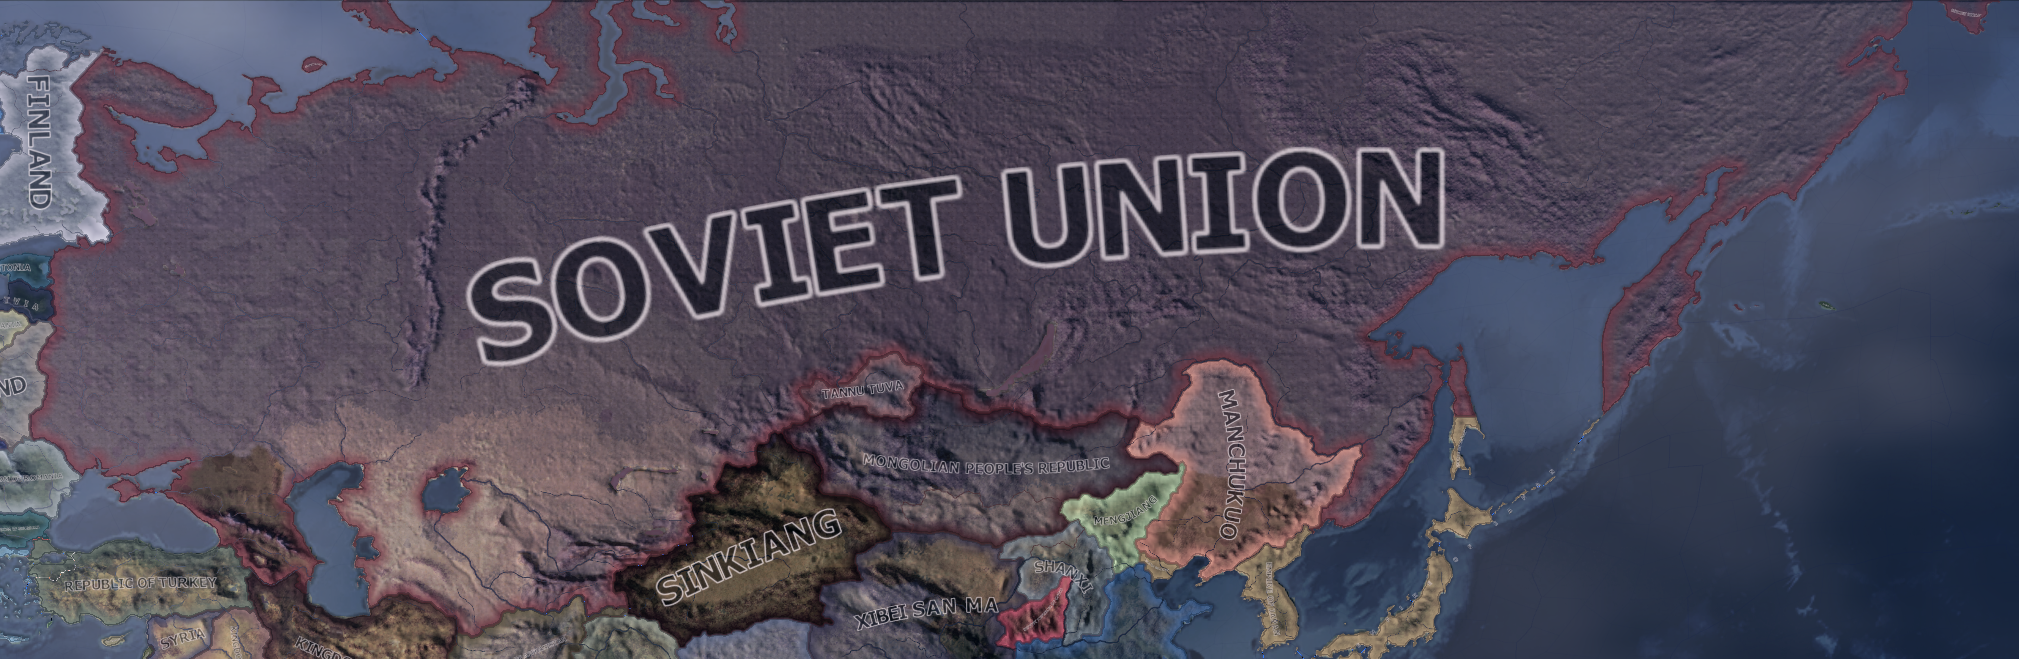 Soviet Union - Hearts of Iron 4 Wiki